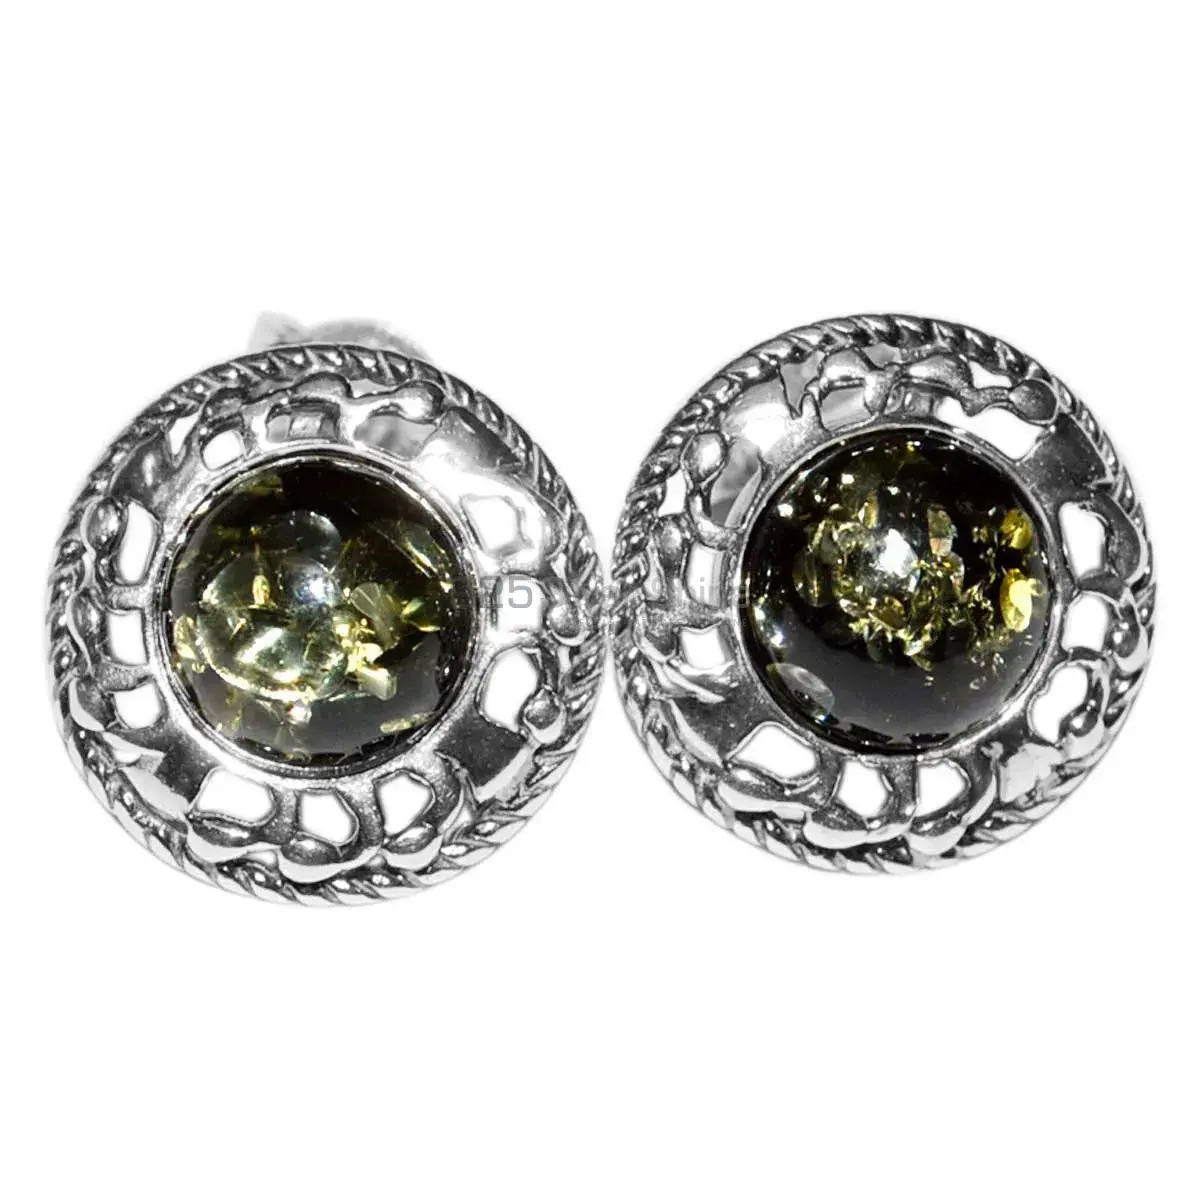 Genuine Turtella Jasper Gemstone Earrings Suppliers In 925 Sterling Silver Jewelry 925SE2923_1